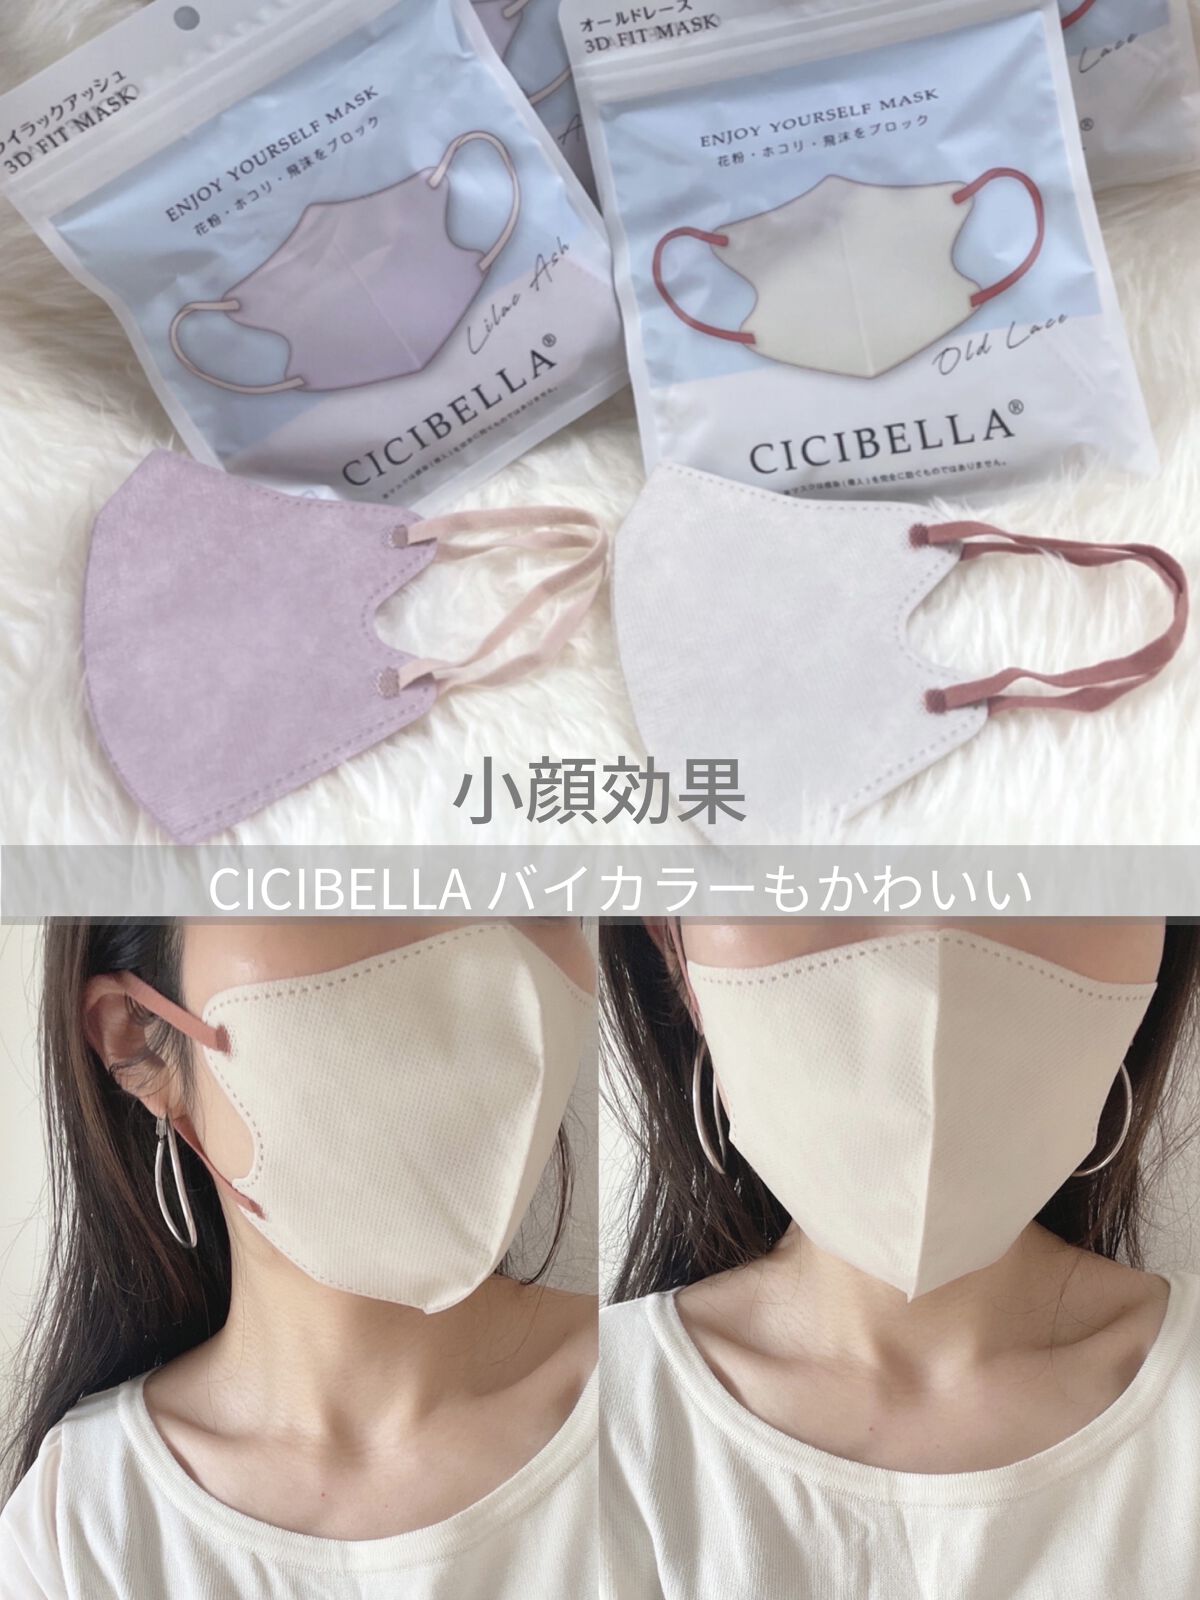 CICIBELLA シシベラ 3D 小顔マスク Cタイプ オールドレース 40 通販